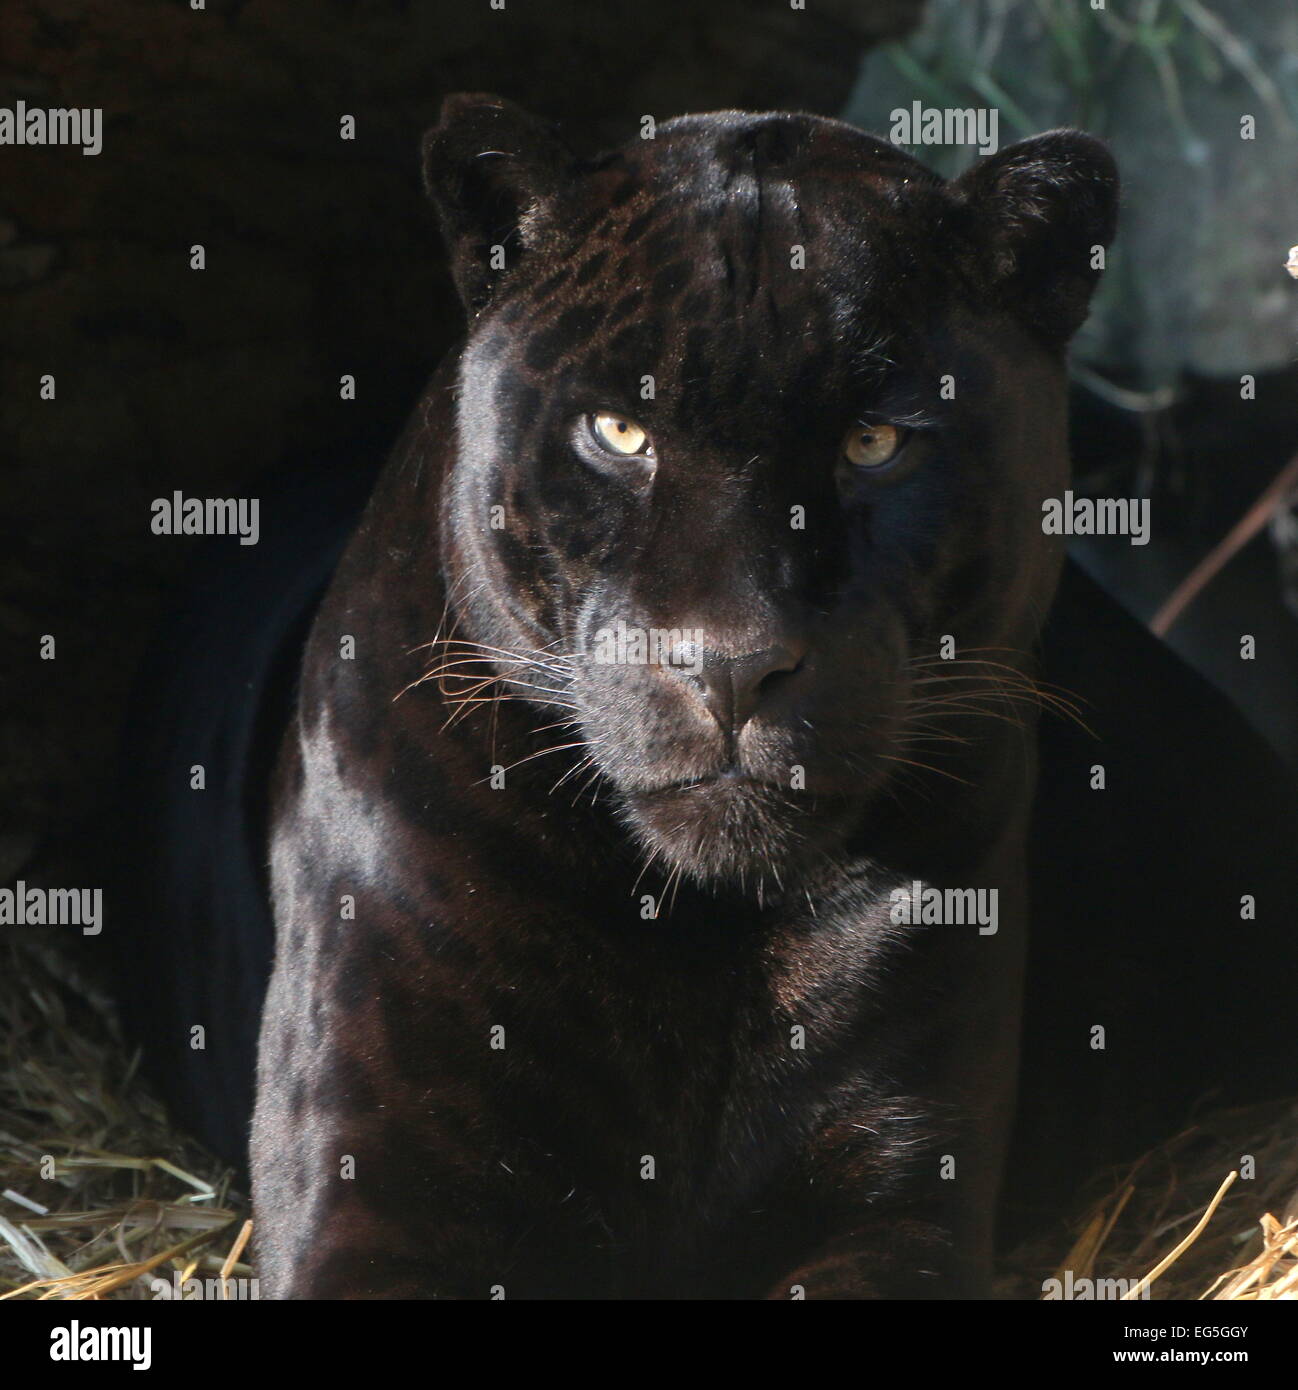 South American Black Jaguar (Panthera onca), close-up of the head, facing camera Stock Photo